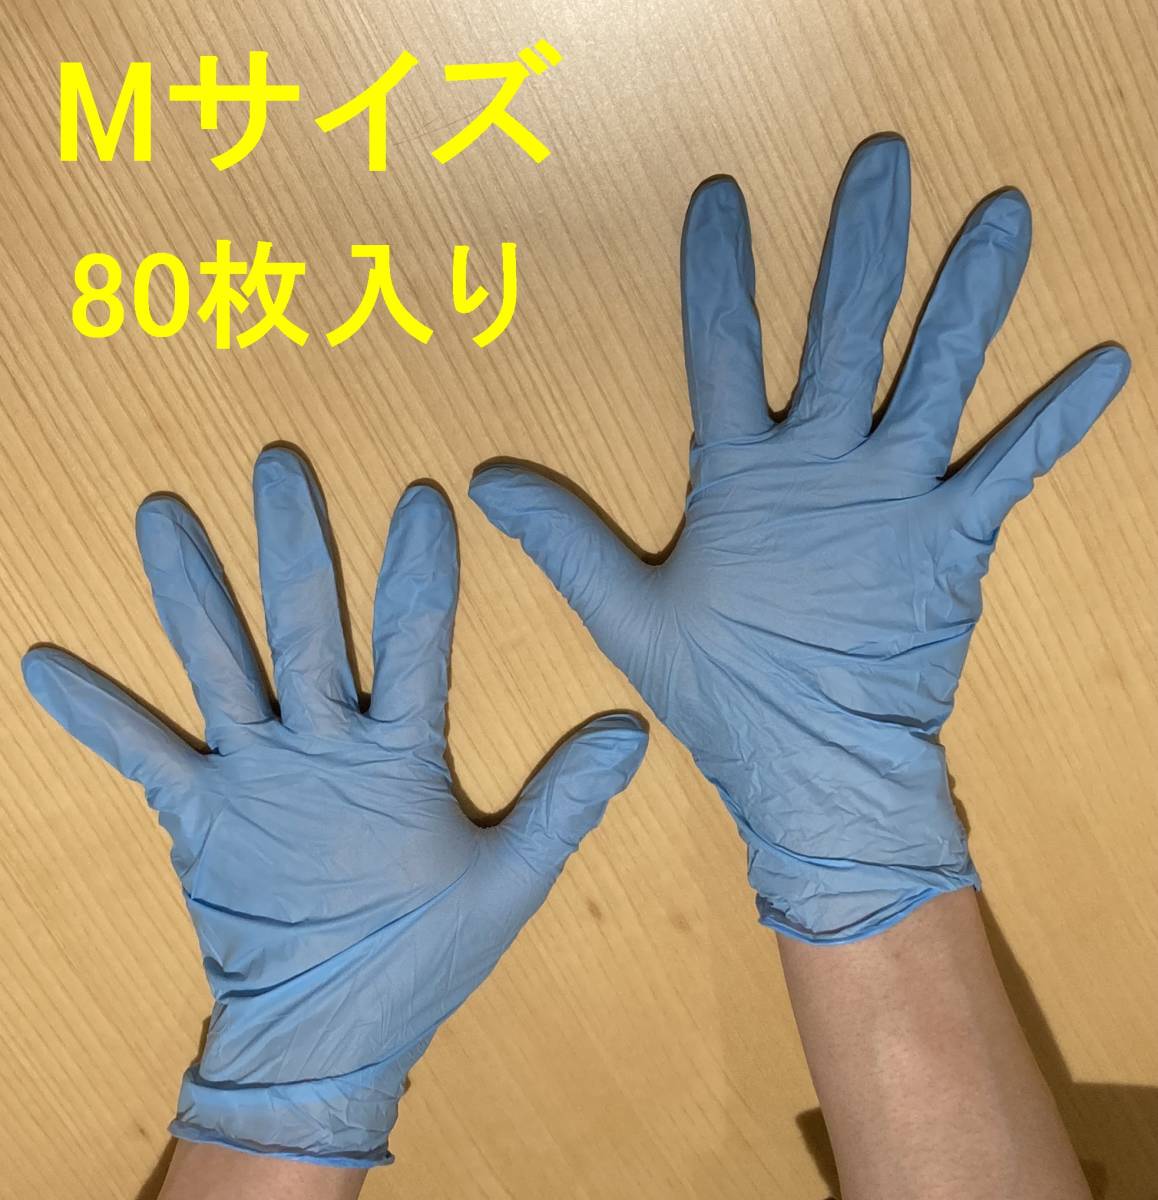 ニトリル手袋 Mサイズ 80枚 使い捨て手袋 パウダーフリー 粉なし